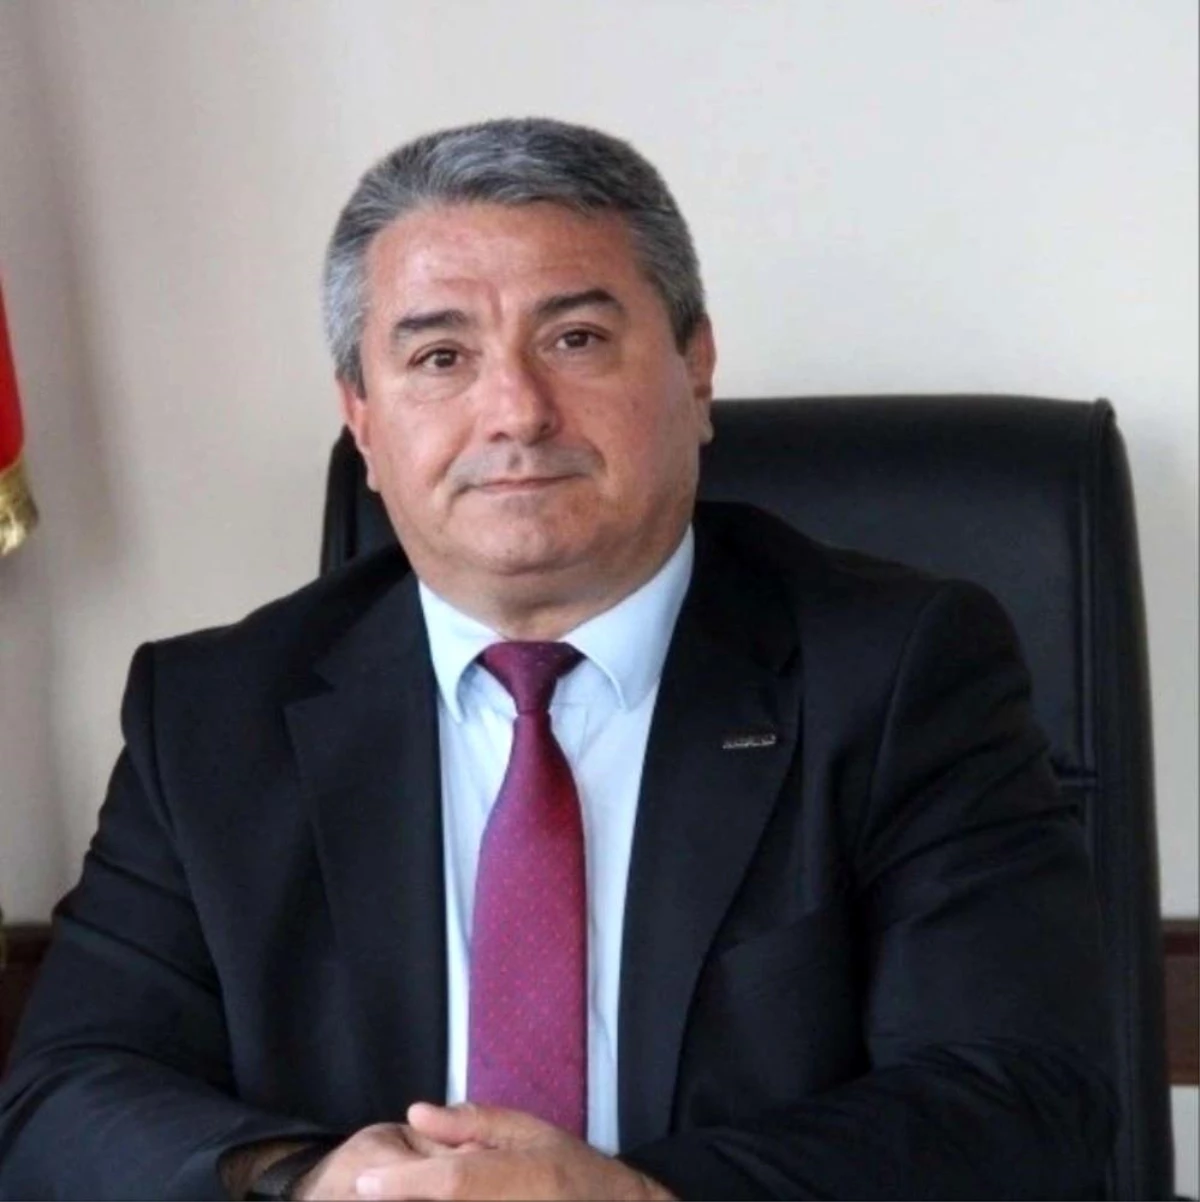 MÜSİAD Başkanı Tosun: "Esnafa yapılacak olan destekleri olumlu karşılıyoruz"